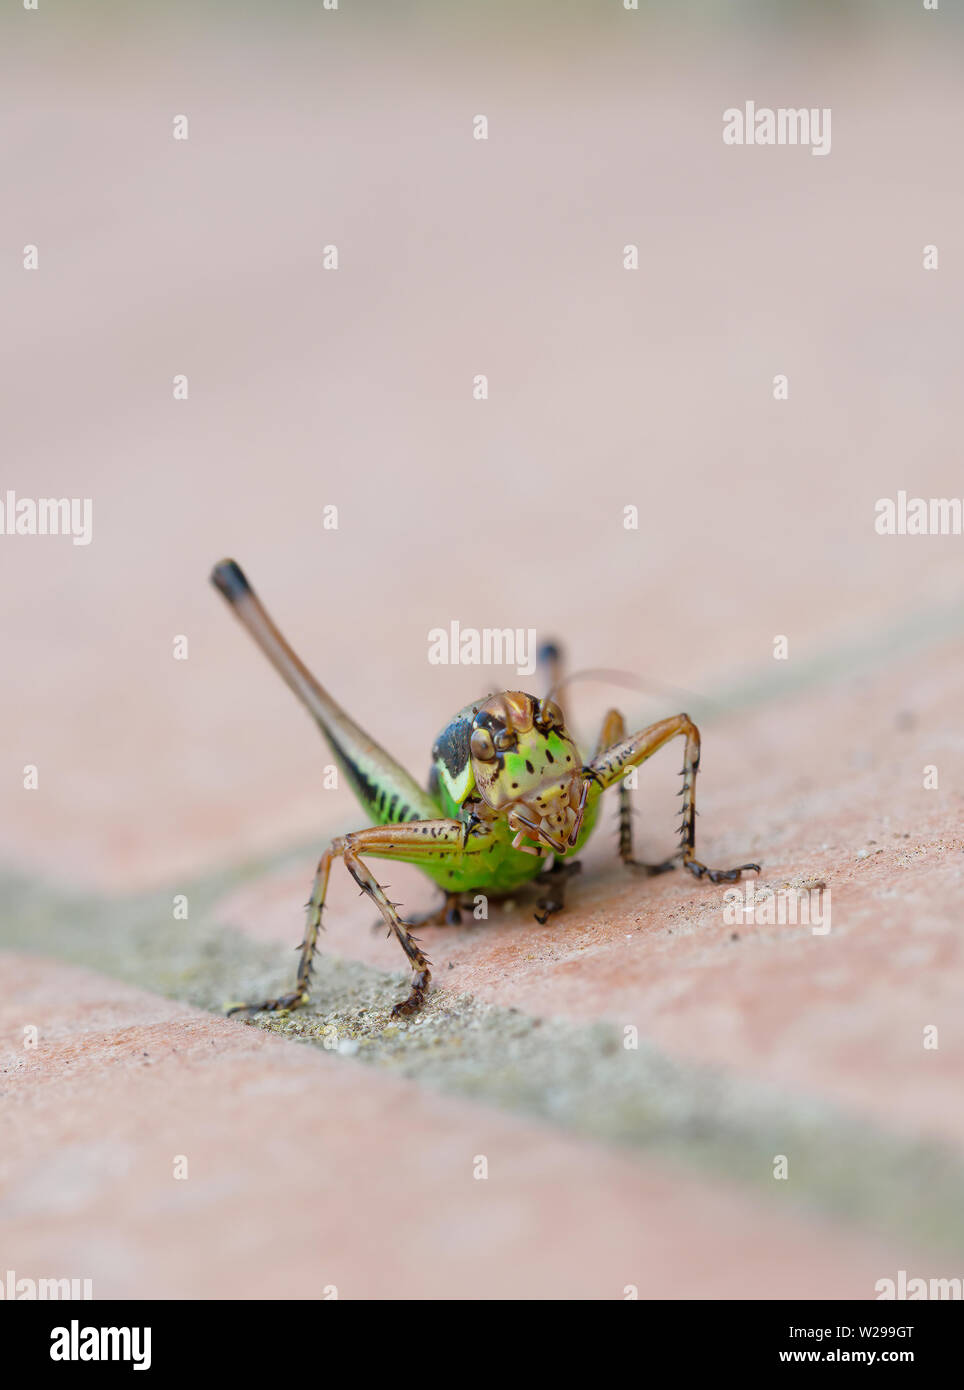 Eupholidoptera chabreri. Bush cricket, insect facing camera. Stock Photo